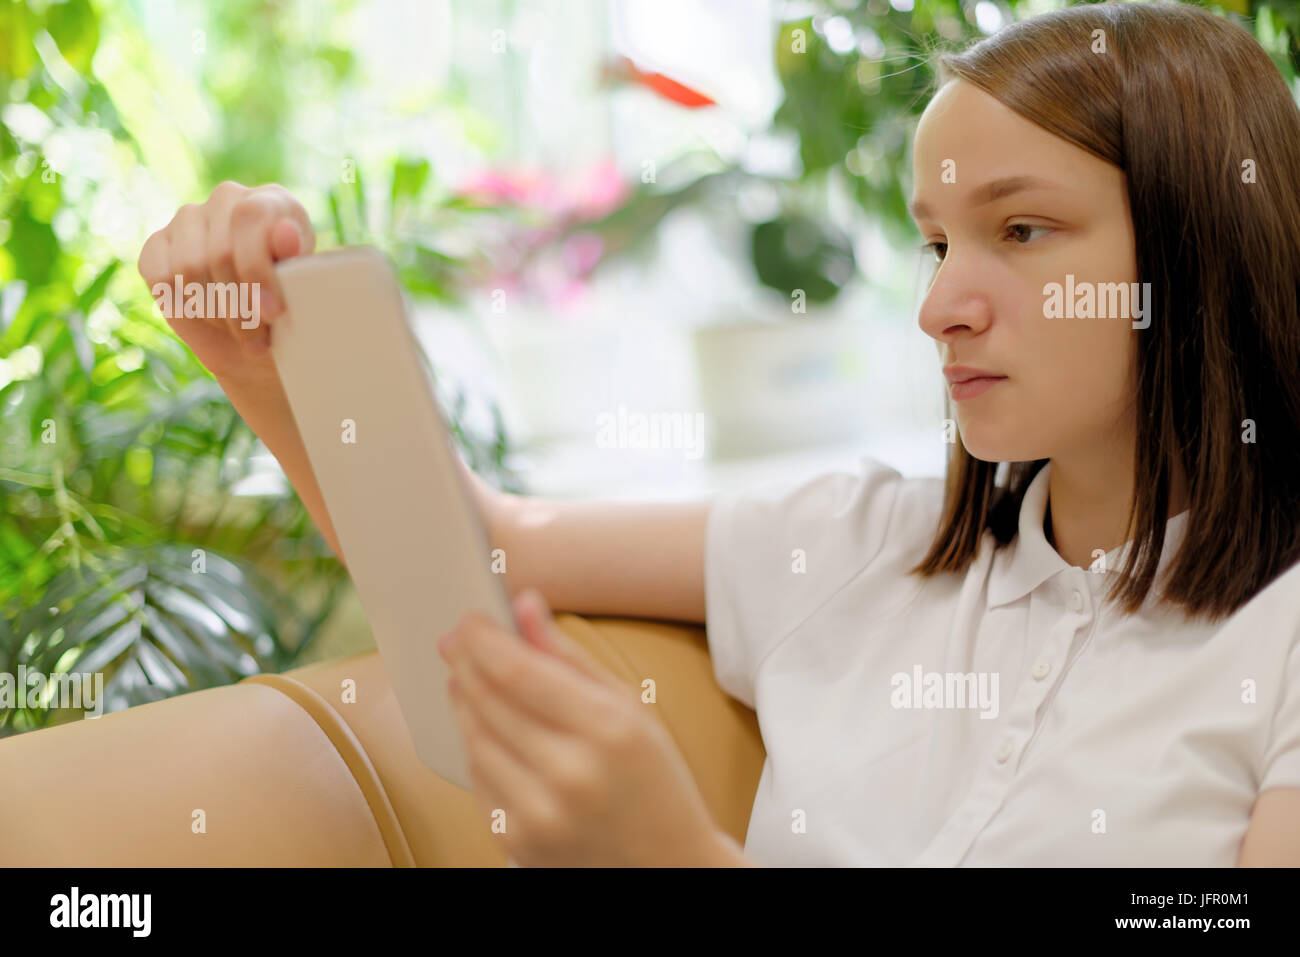 Personen: junges Mädchen, Studentin, die Nutzung von Tablet-PC oder e-Book-Reader, in einer Bibliothek oder im Buchhandel, selektiven Fokus auf Gesicht Stockfoto